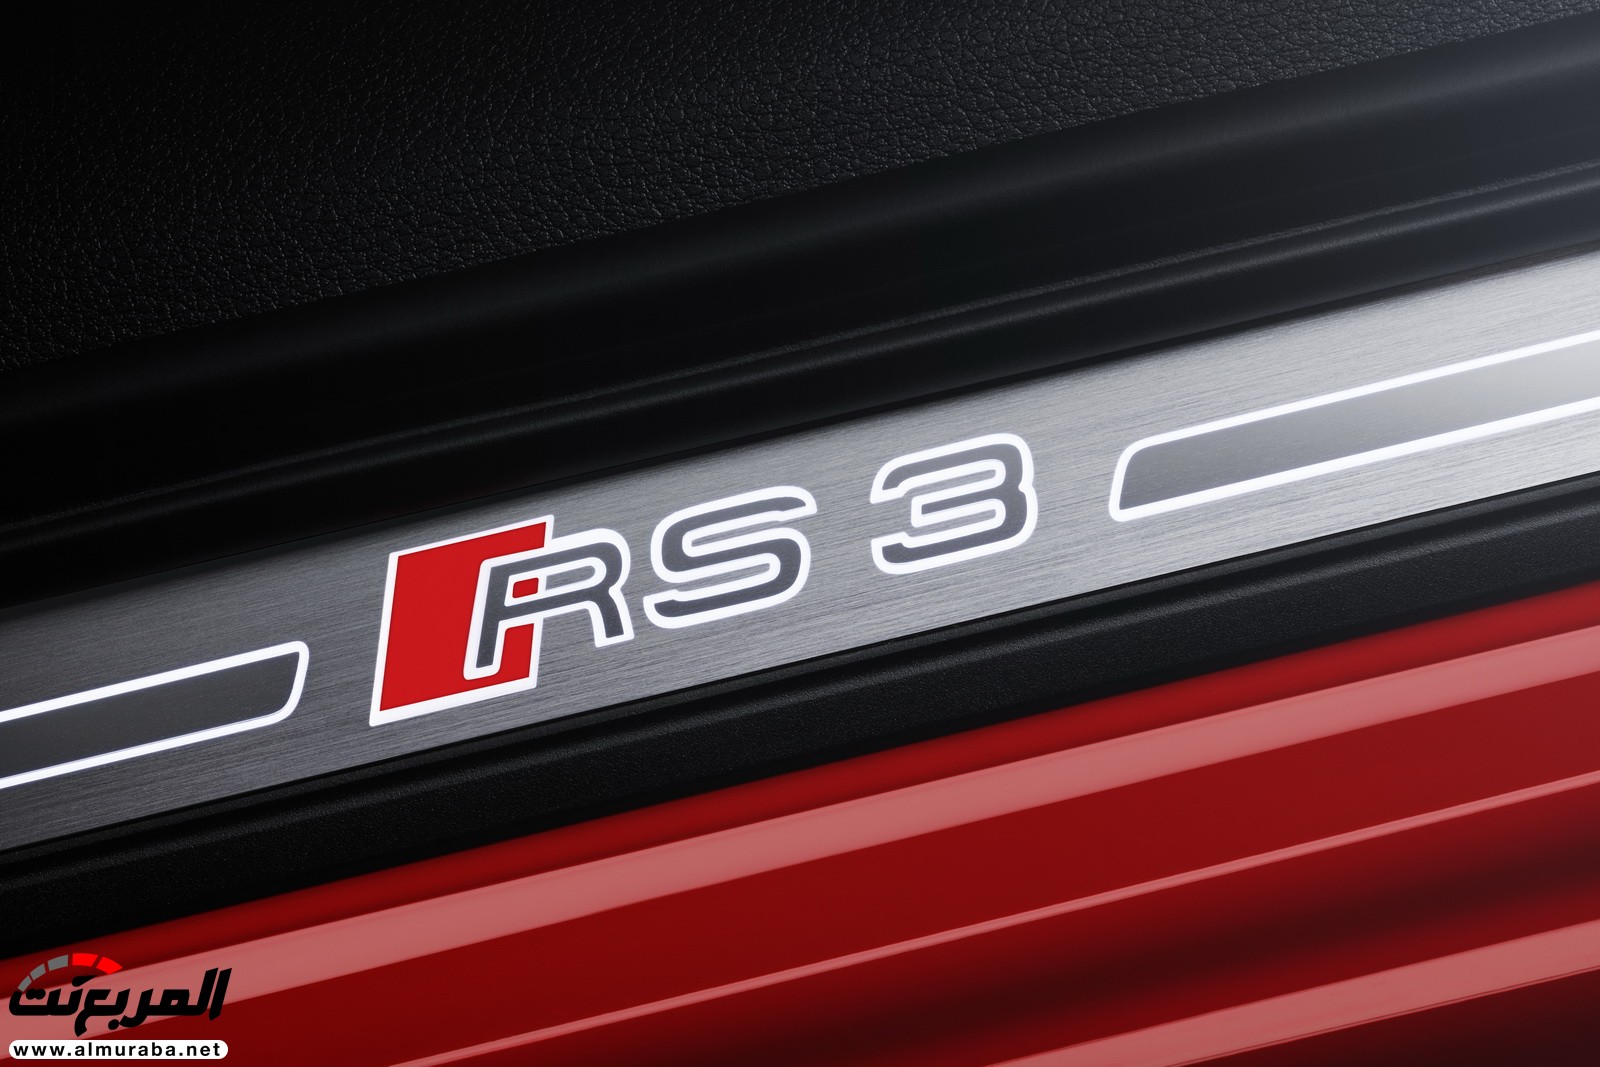 "أودي" تكشف عن RS3 الجديدة كليا 2018 بقوة 395 حصان Audi 42